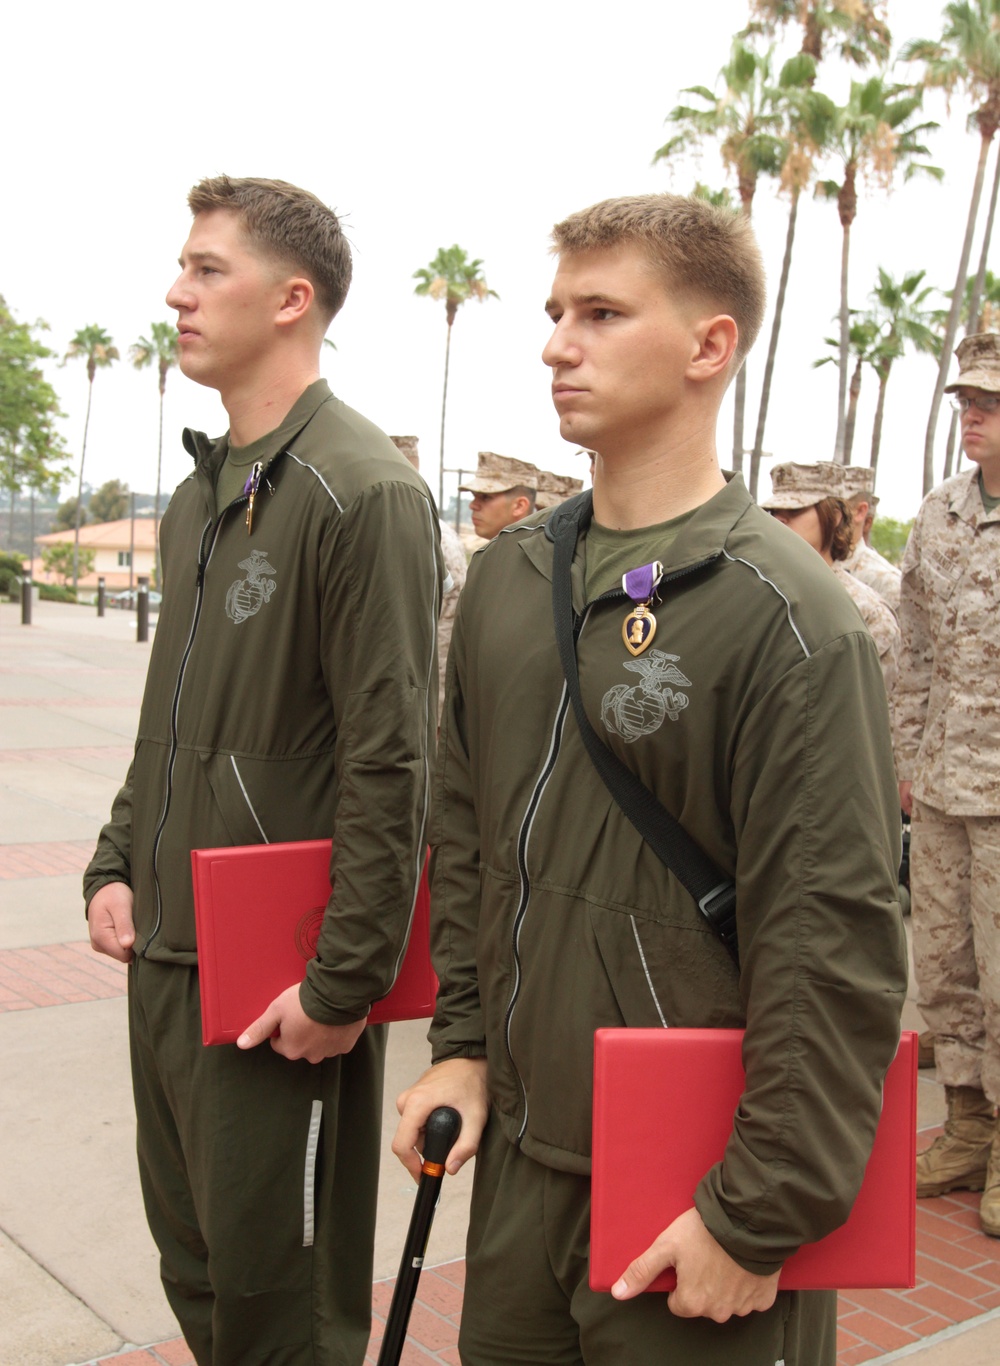 3/4 Marines awarded Purple Heart